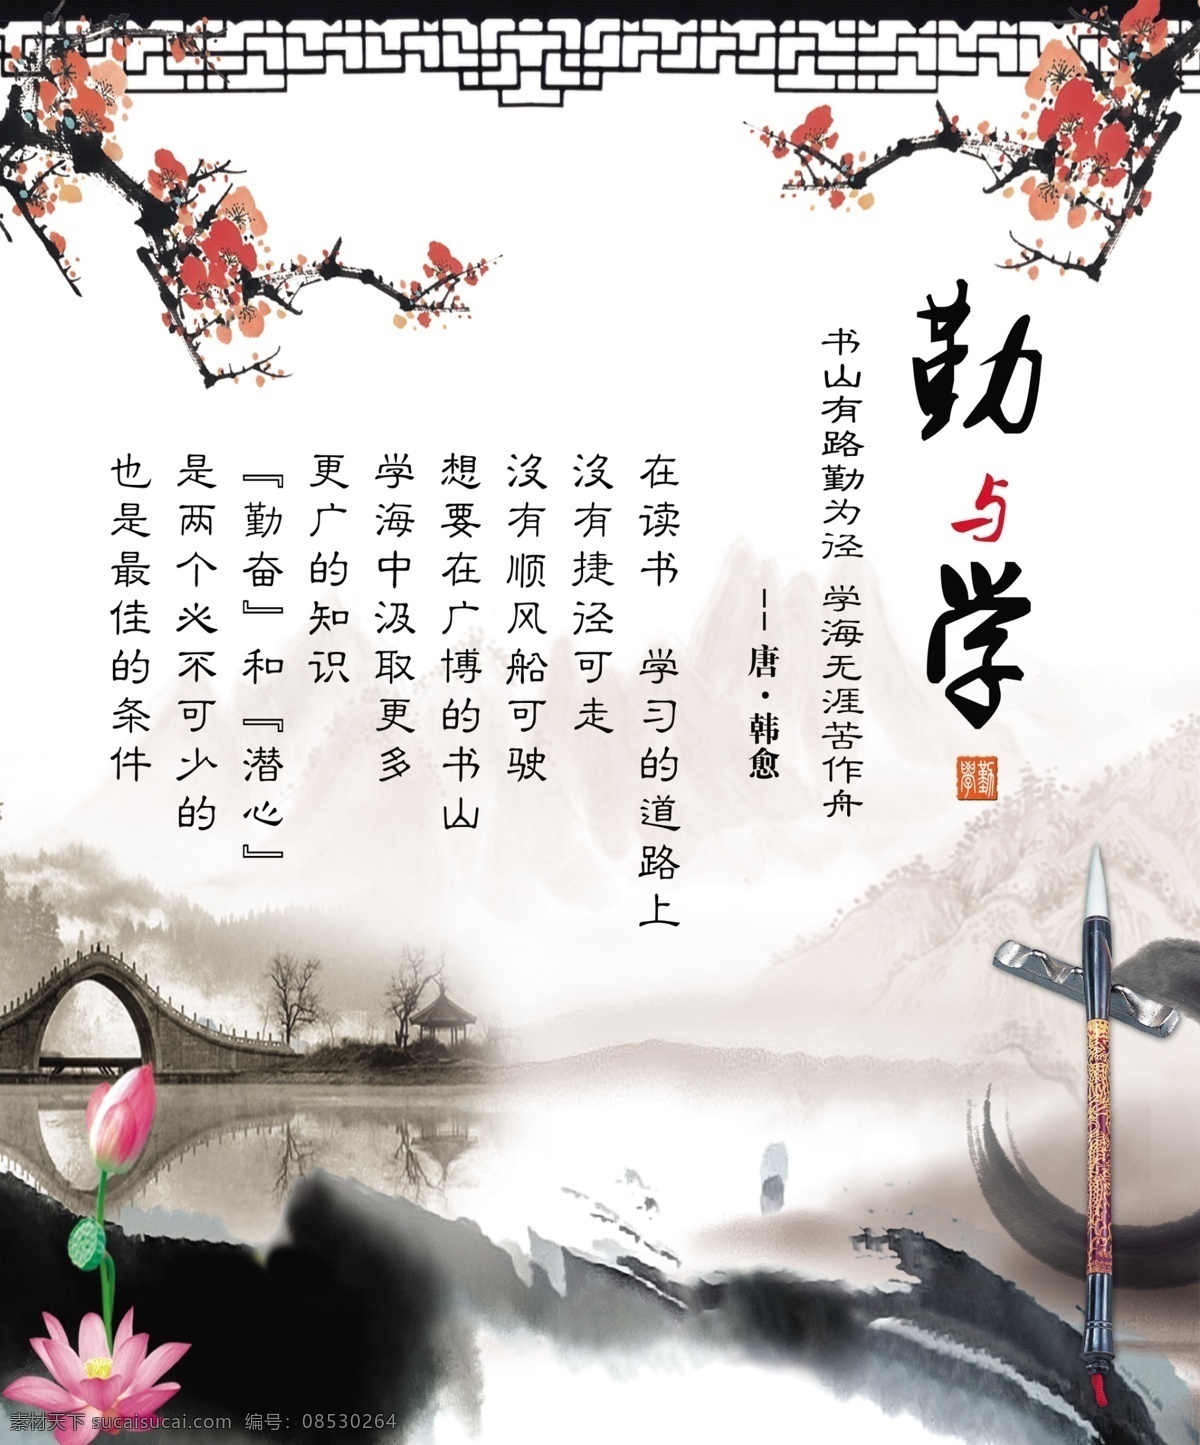 勤学 中国 山水 水墨画 中国风 底纹边框 背景底纹